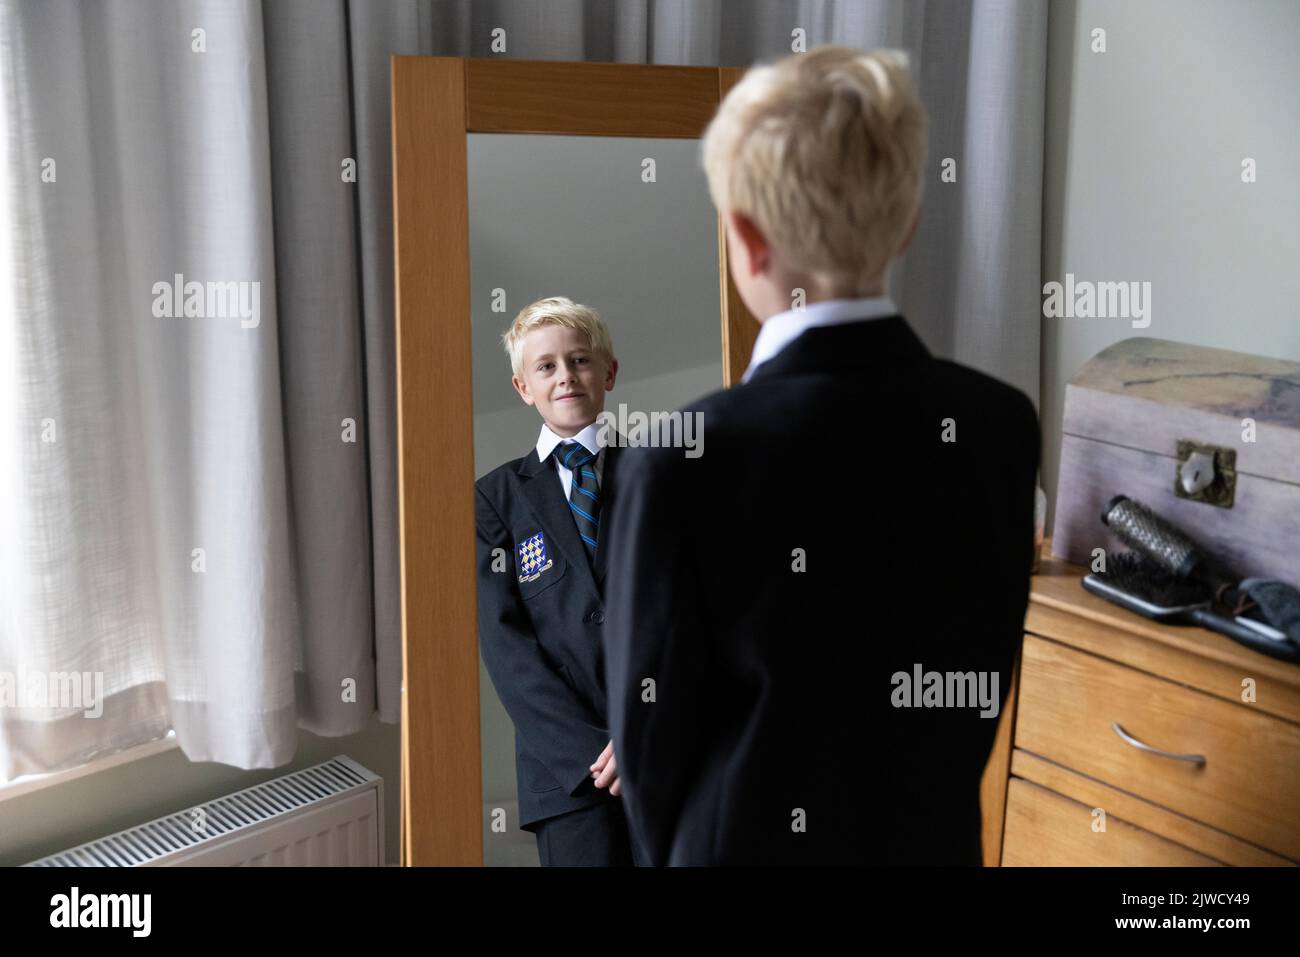 Il primo giorno di ritorno a scuola, un ragazzo si prepara nella sua nuova divisa prima del suo primo giorno alla scuola secondaria, Inghilterra, Regno Unito Foto Stock